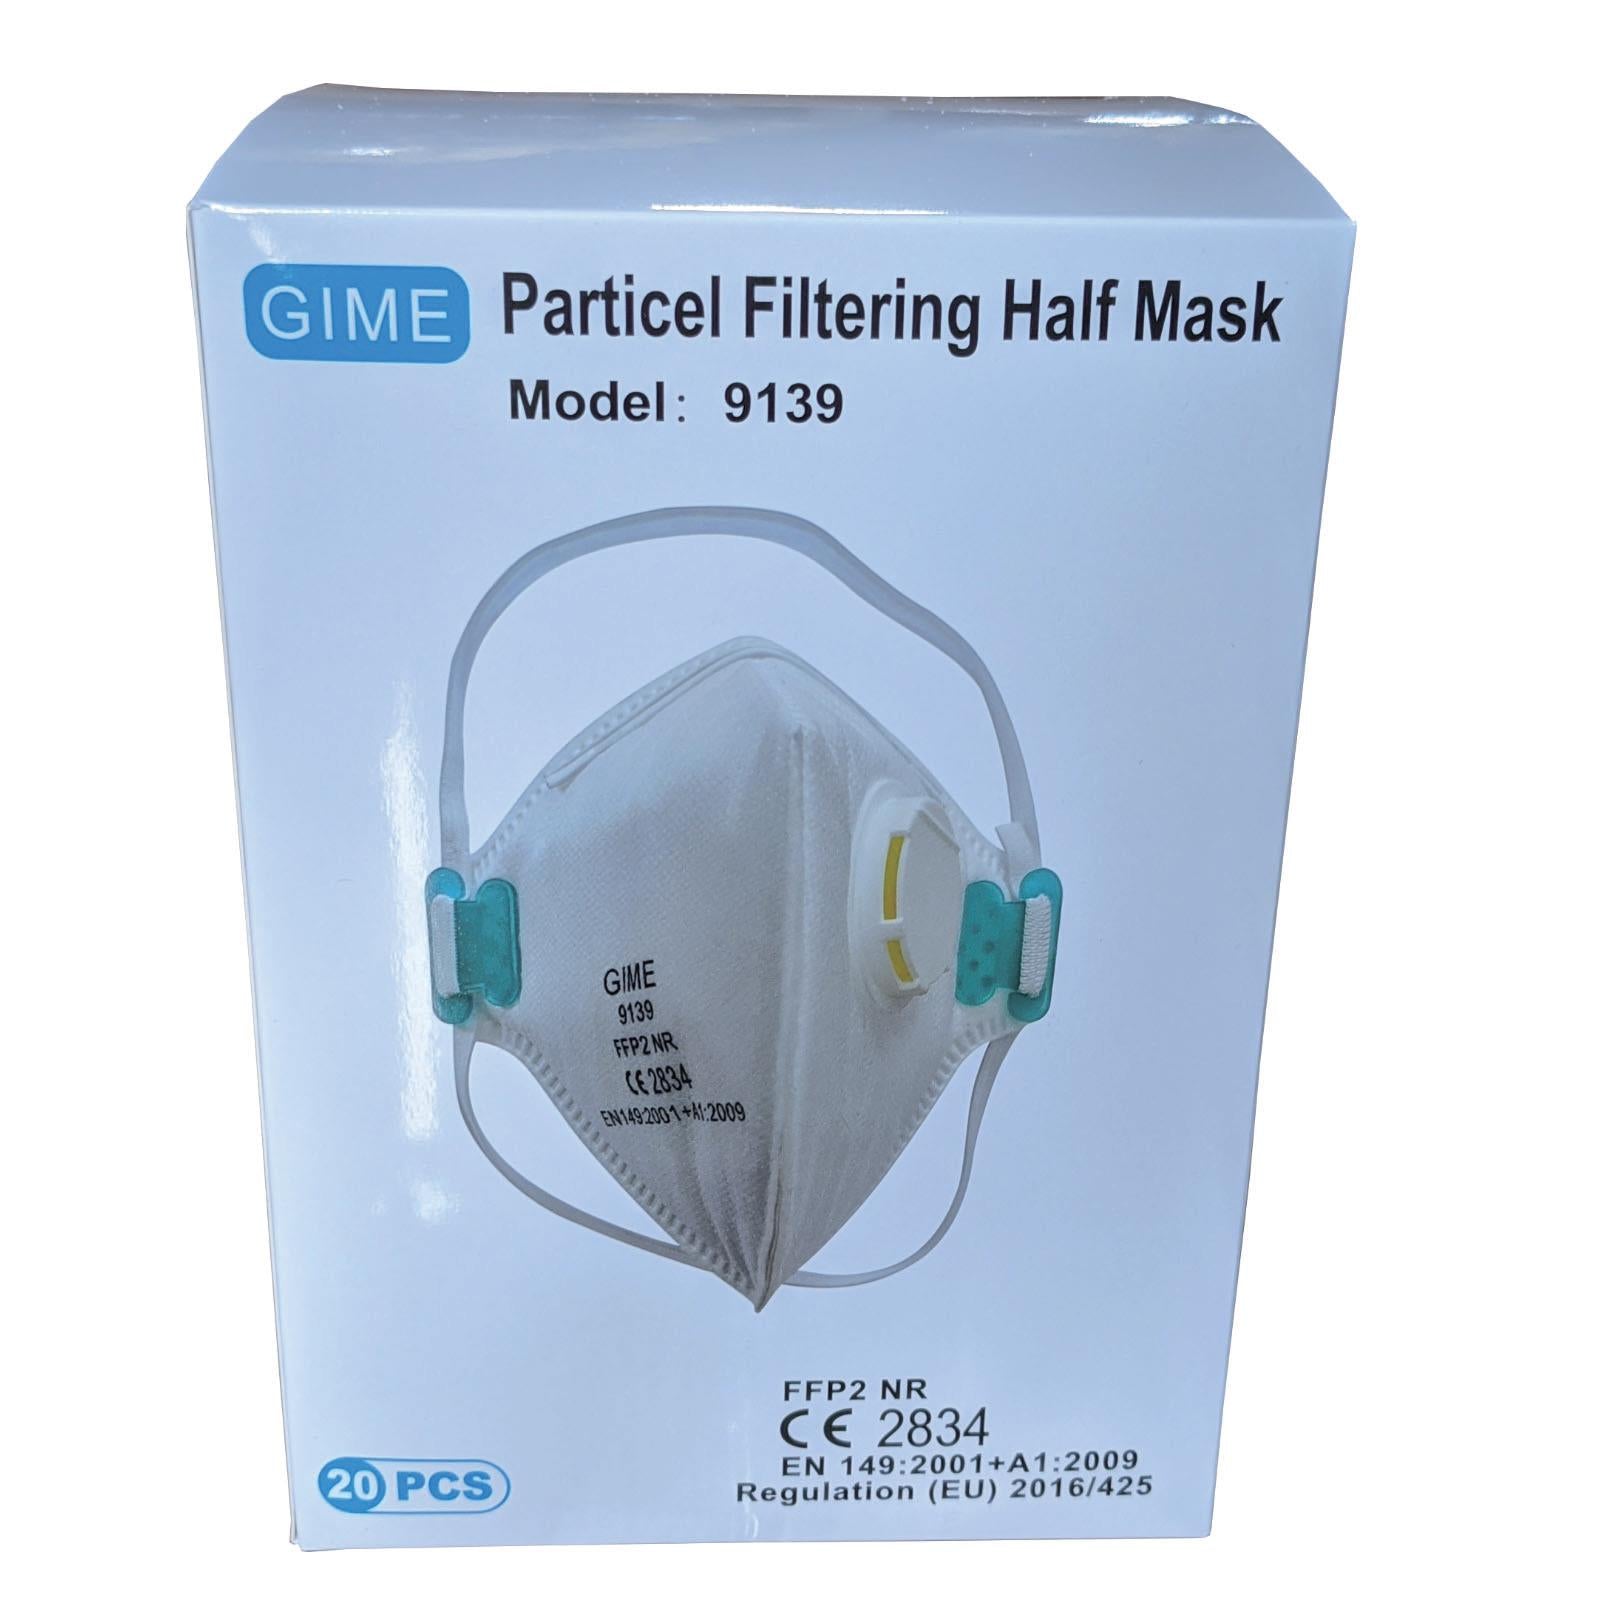 Particle Filtering Half Mask Valved FFP2